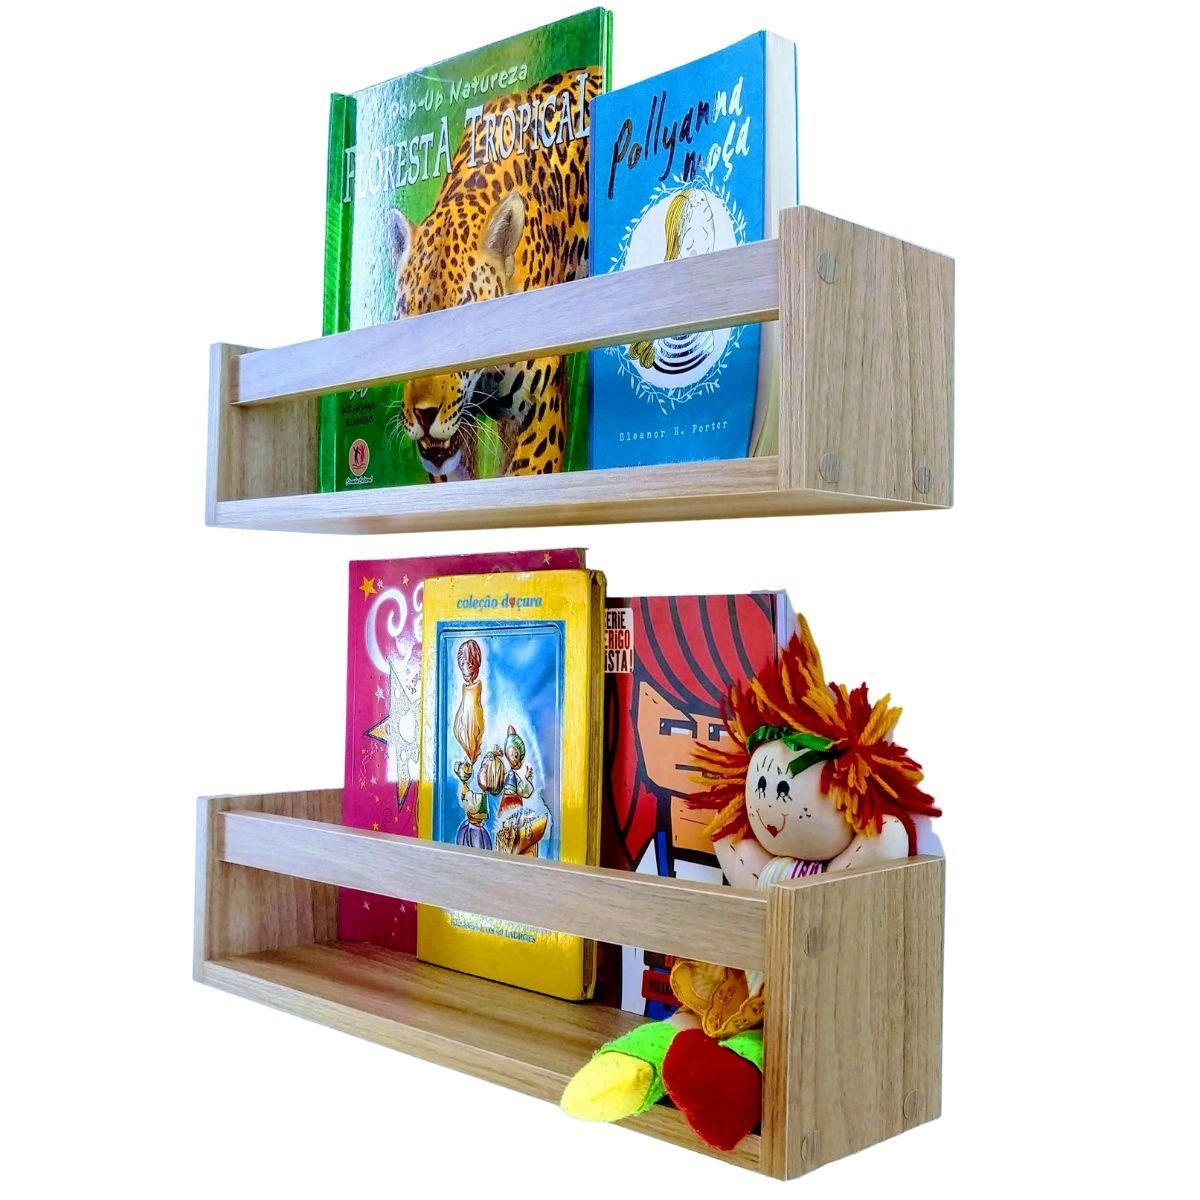 Nicho Organizador de Livros Brinquedos Quarto Infantil Prateleira Livreiro Mdf Madeira 55cm:marrom - 2